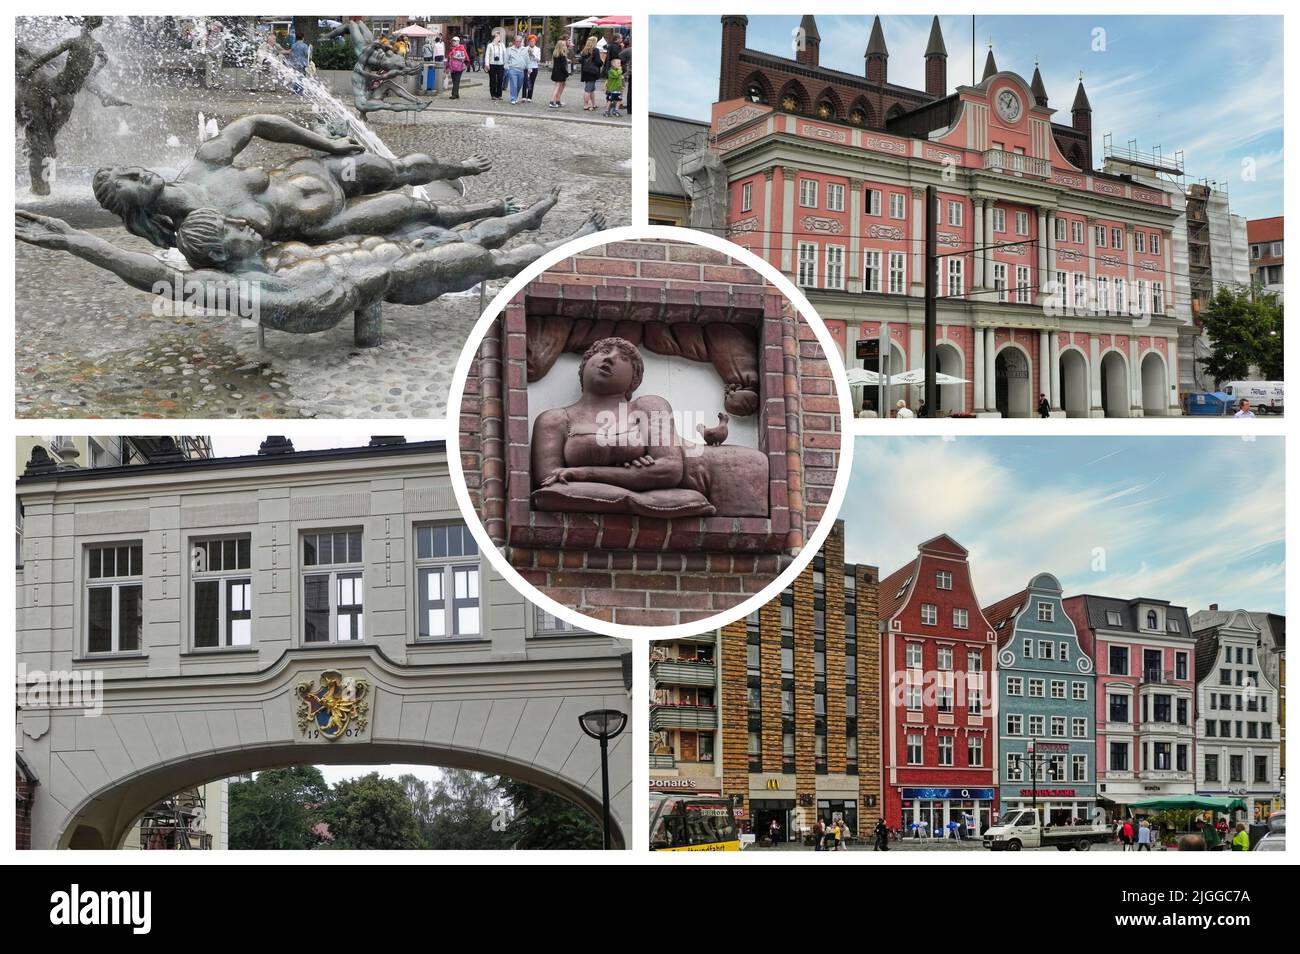 Rostock est une belle ville allemande colorée et cosmopolite qui abrite un important port historique de commerce de la mer Baltique. Banque D'Images